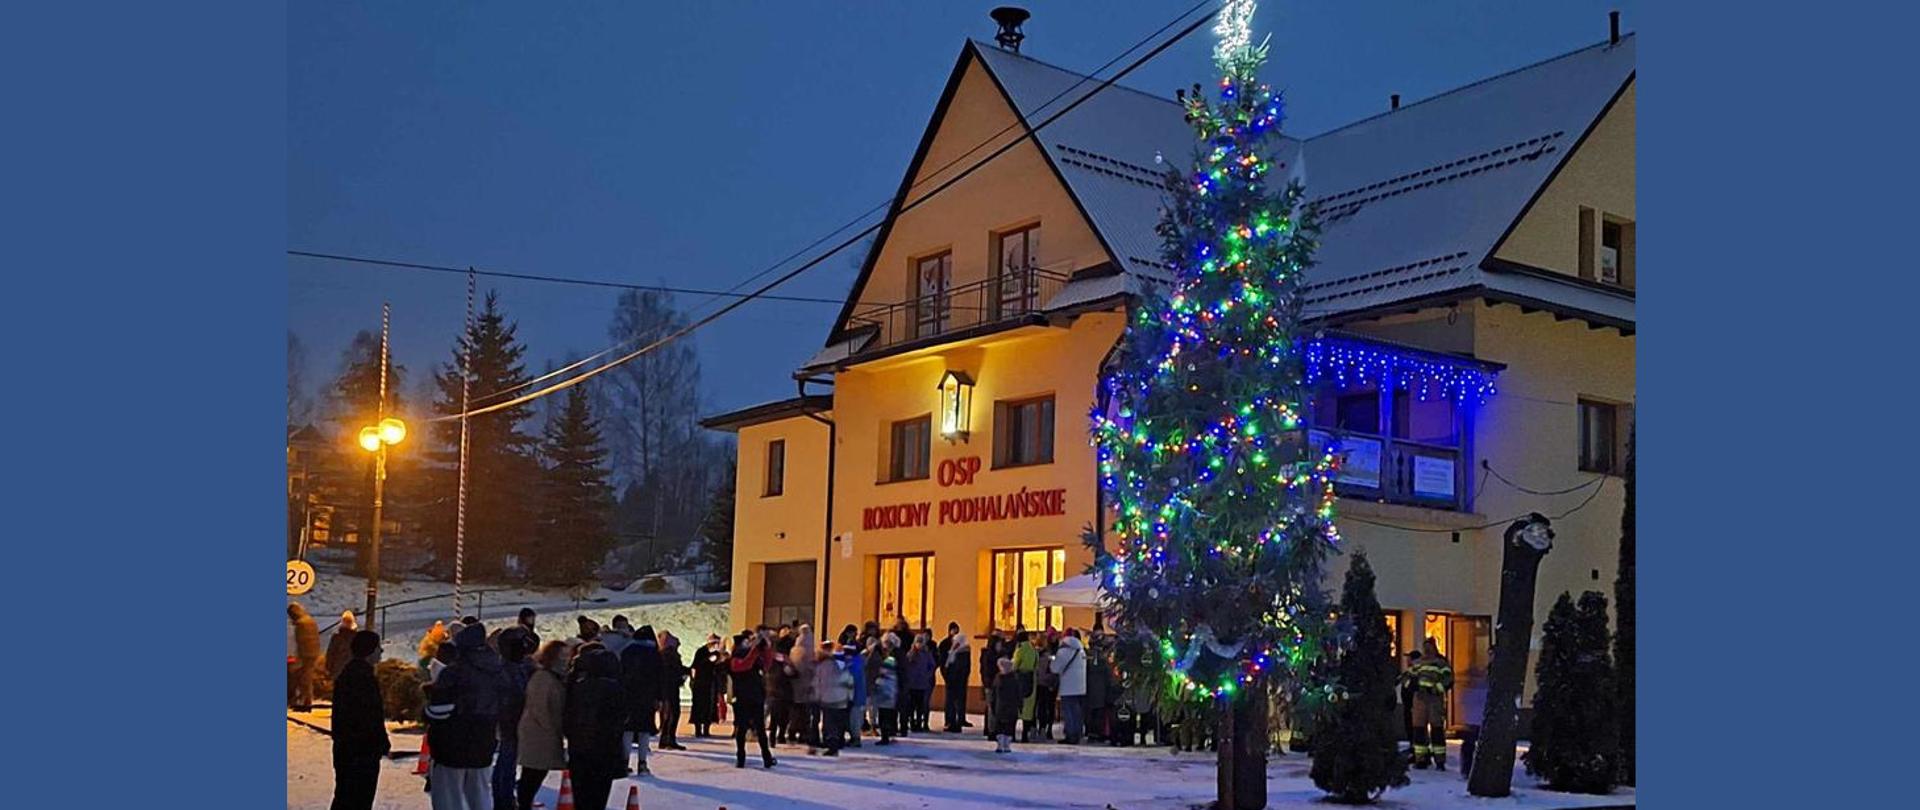 Świąteczna choinka stojąca na placu przy remizie OSP wystrojona w setki światełek wraz przybyłymi mieszkańcami .